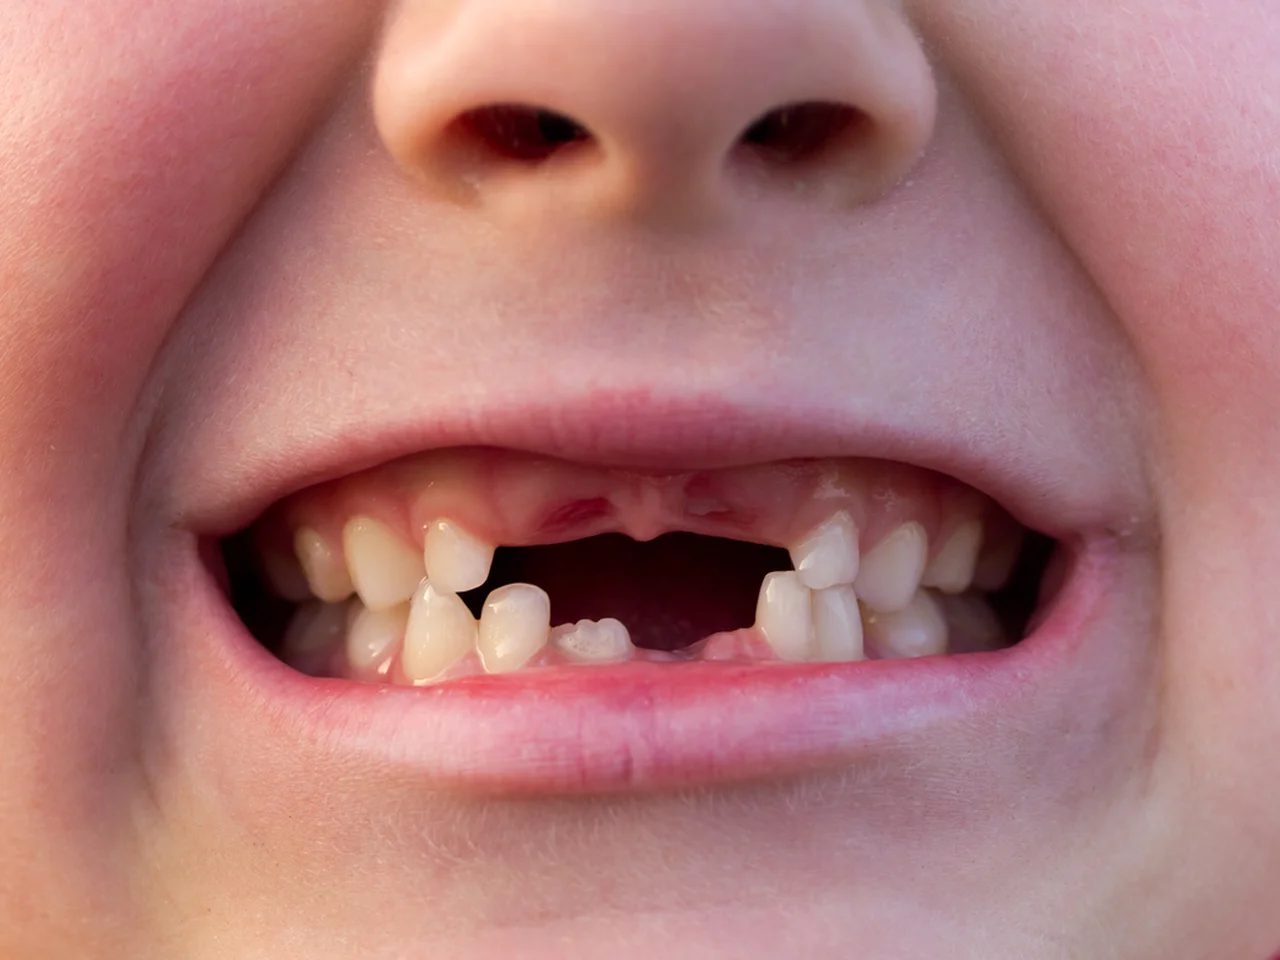 Czy warto przechowywać mleczne zęby?  To może uratować życie!